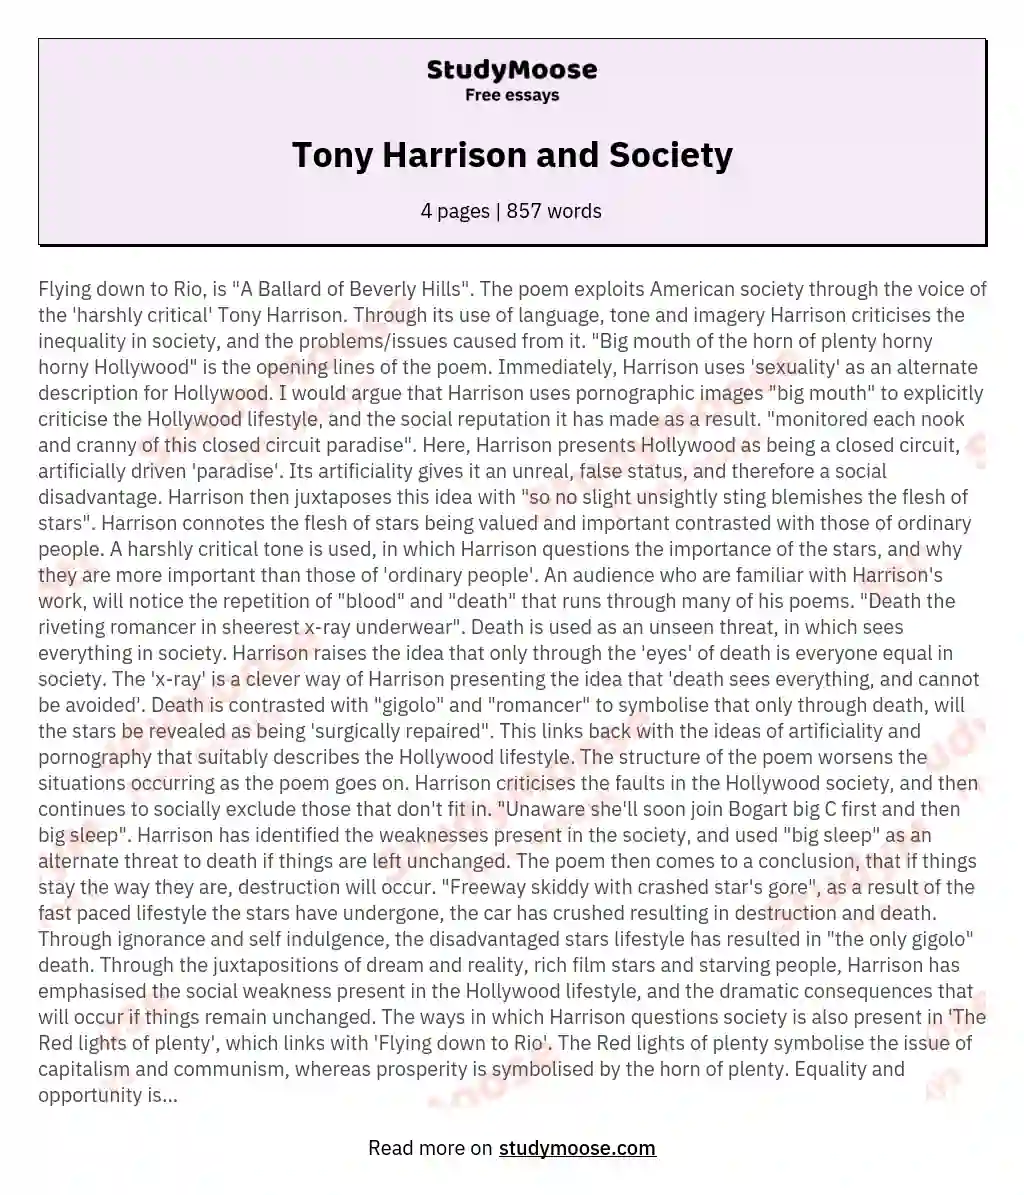 Tony Harrison and Society essay